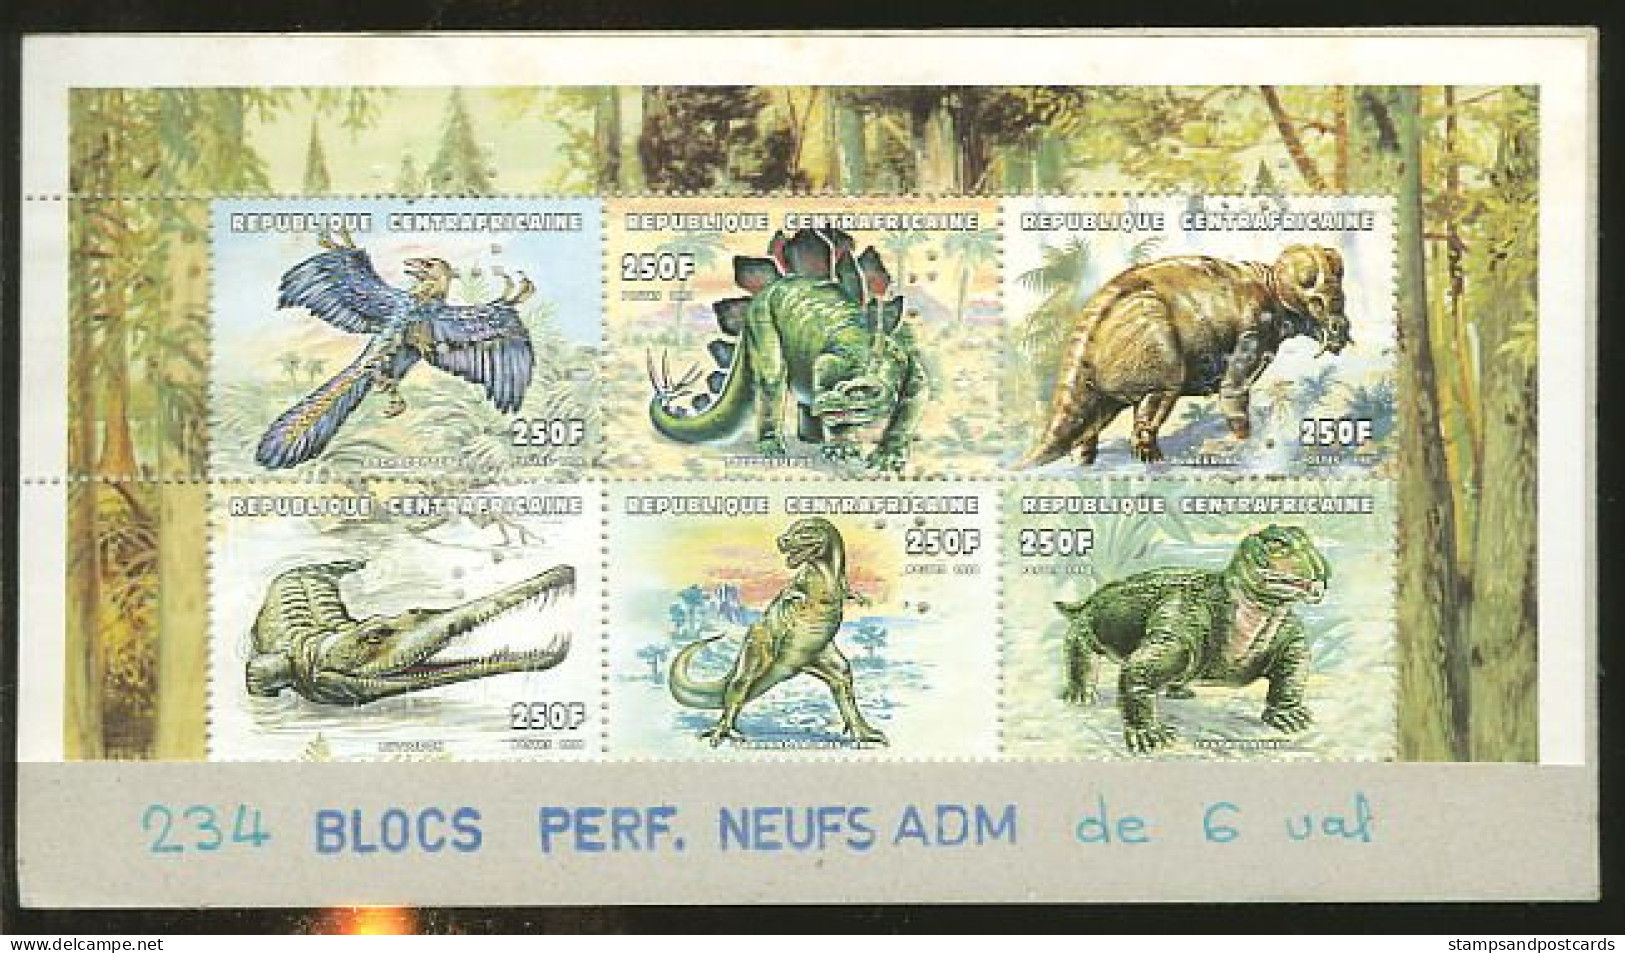 Republique Centrafricaine Feuillet Perforation Perfin SPECIMEN Dinosaures Dinosaure 1998 Central Africa Dinosaurs - Vor- U. Frühgeschichte